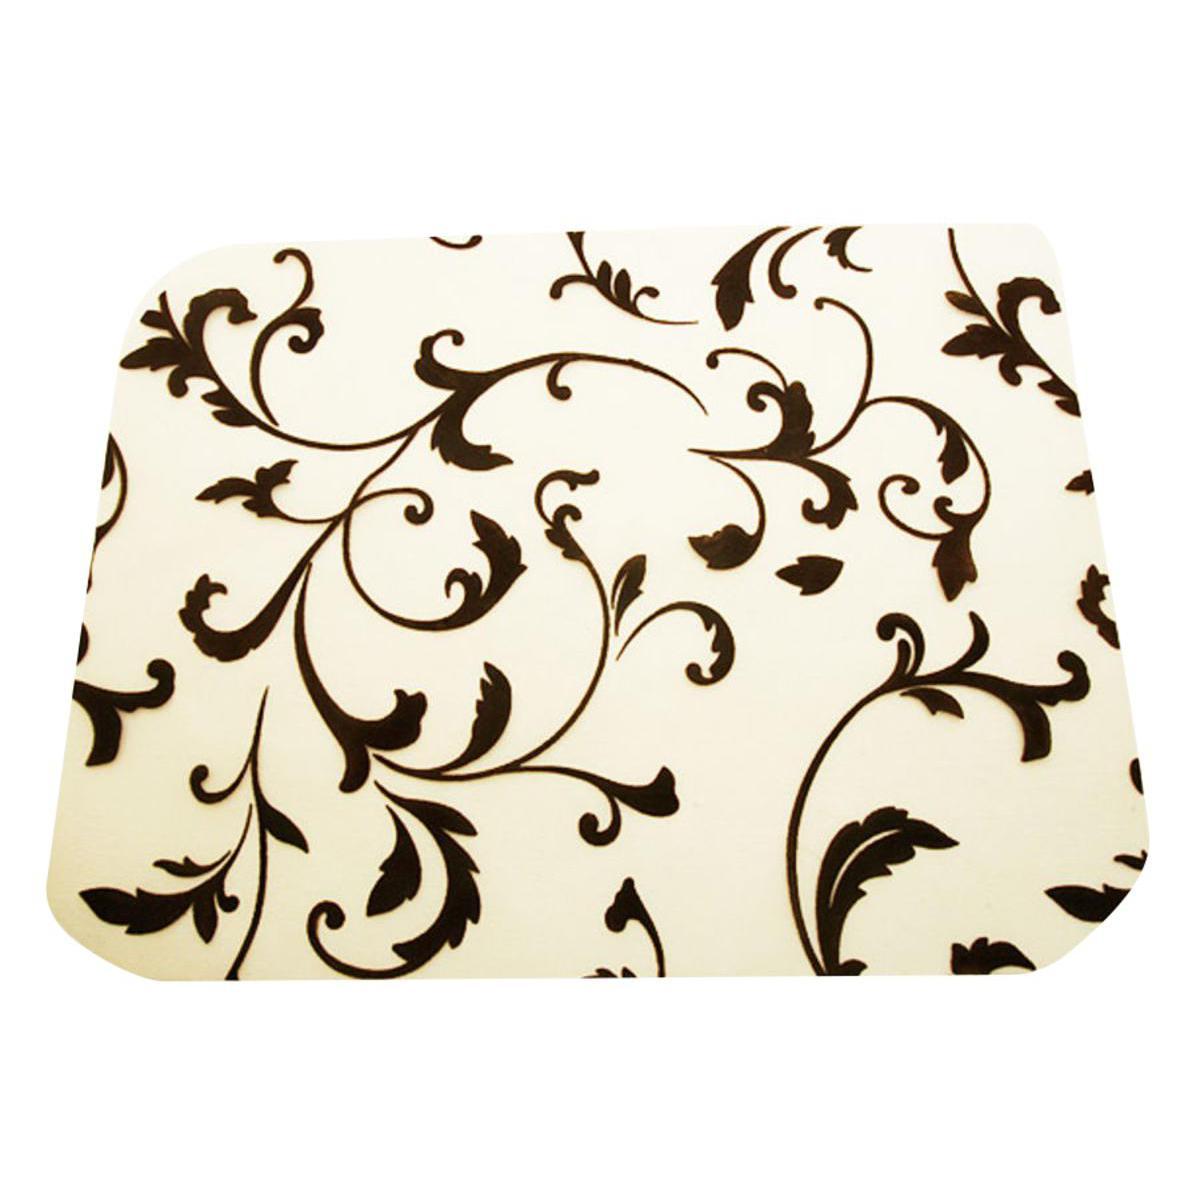 Lot de 4 sets de table à motifs arabesque - Organza - 30 x 40 cm - Marron